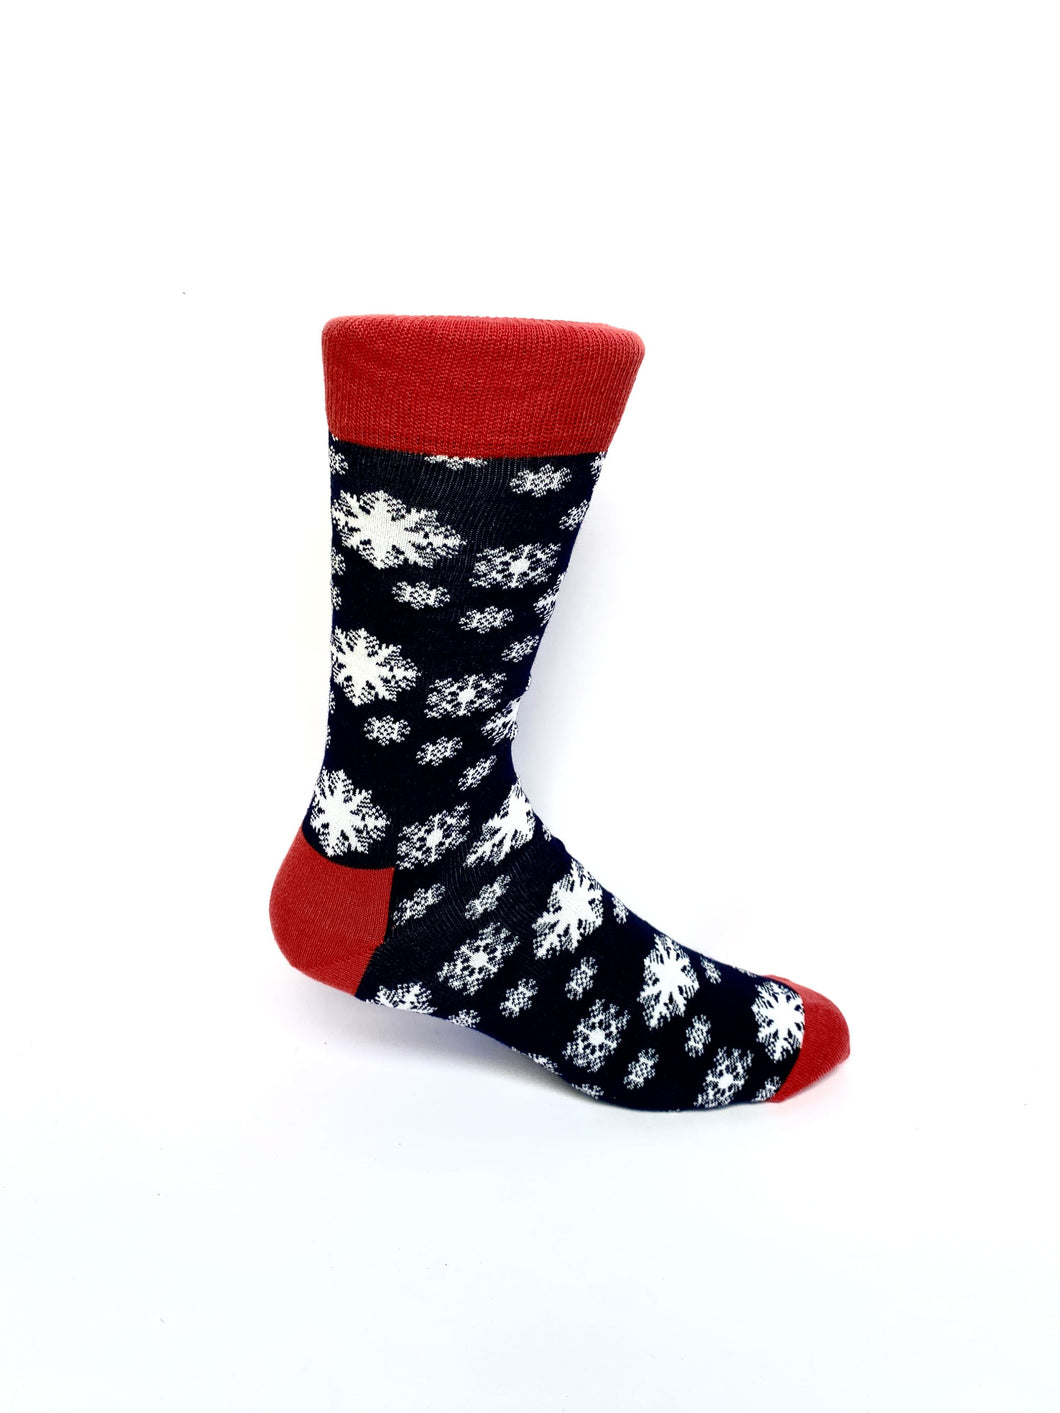 darius Schneeflocken-Socken, Weihnachtssocken mit Schneeflocken-Motiv “Magic Crystals” von We are Socks! ✓Hand gekämmte Biobaumwolle ✓Angenehmer Tragekomfort ✓Wintersocken ✓Bunte Socken ✓Good Mood Socken